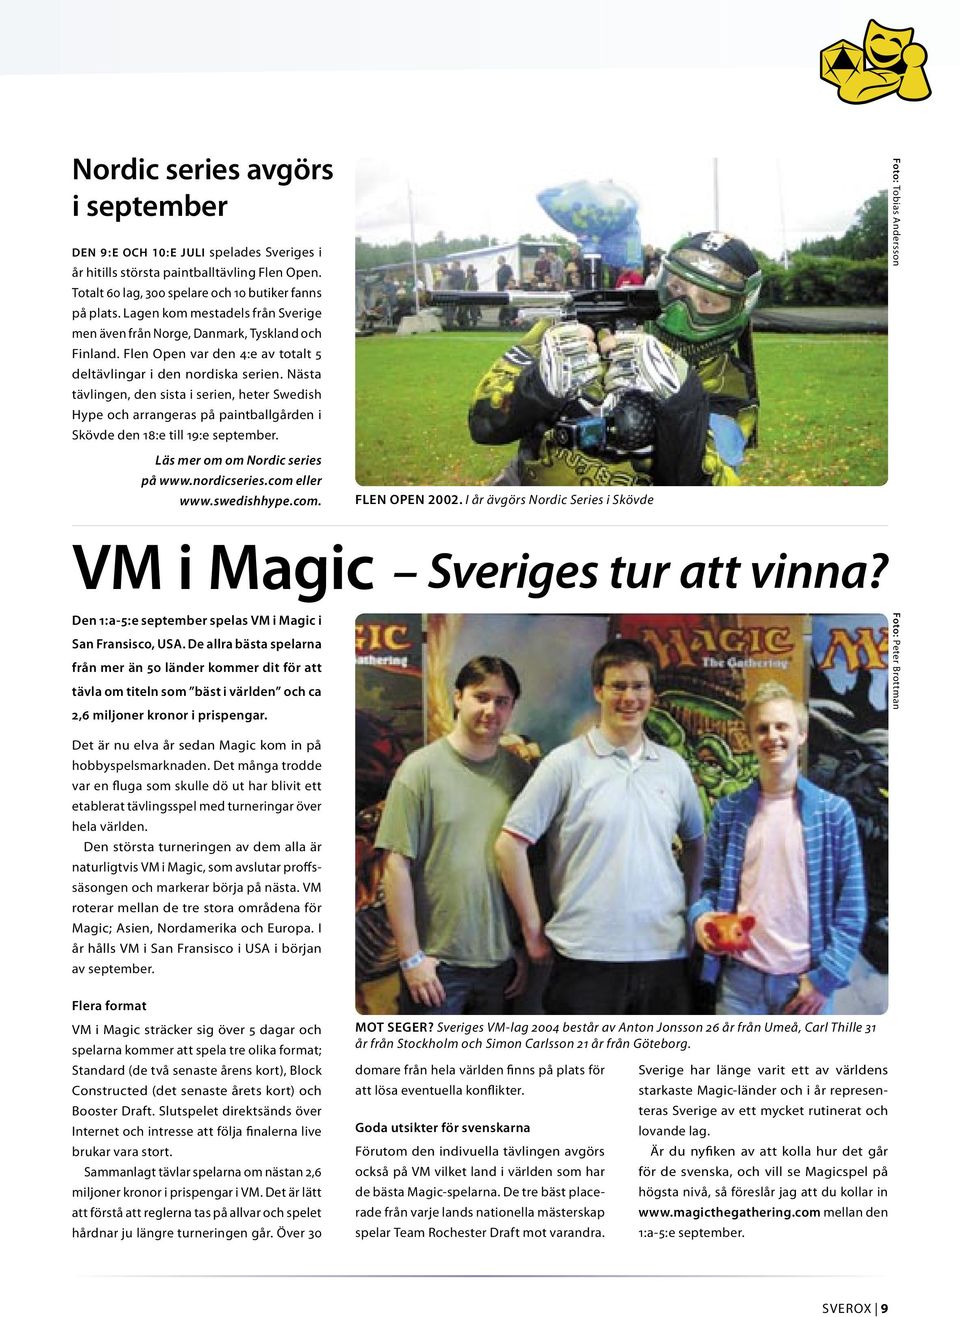 Nästa tävlingen, den sista i serien, heter Swedish Hype och arrangeras på paintballgården i Skövde den 18:e till 19:e september. VM i Magic Sveriges tur att vinna?